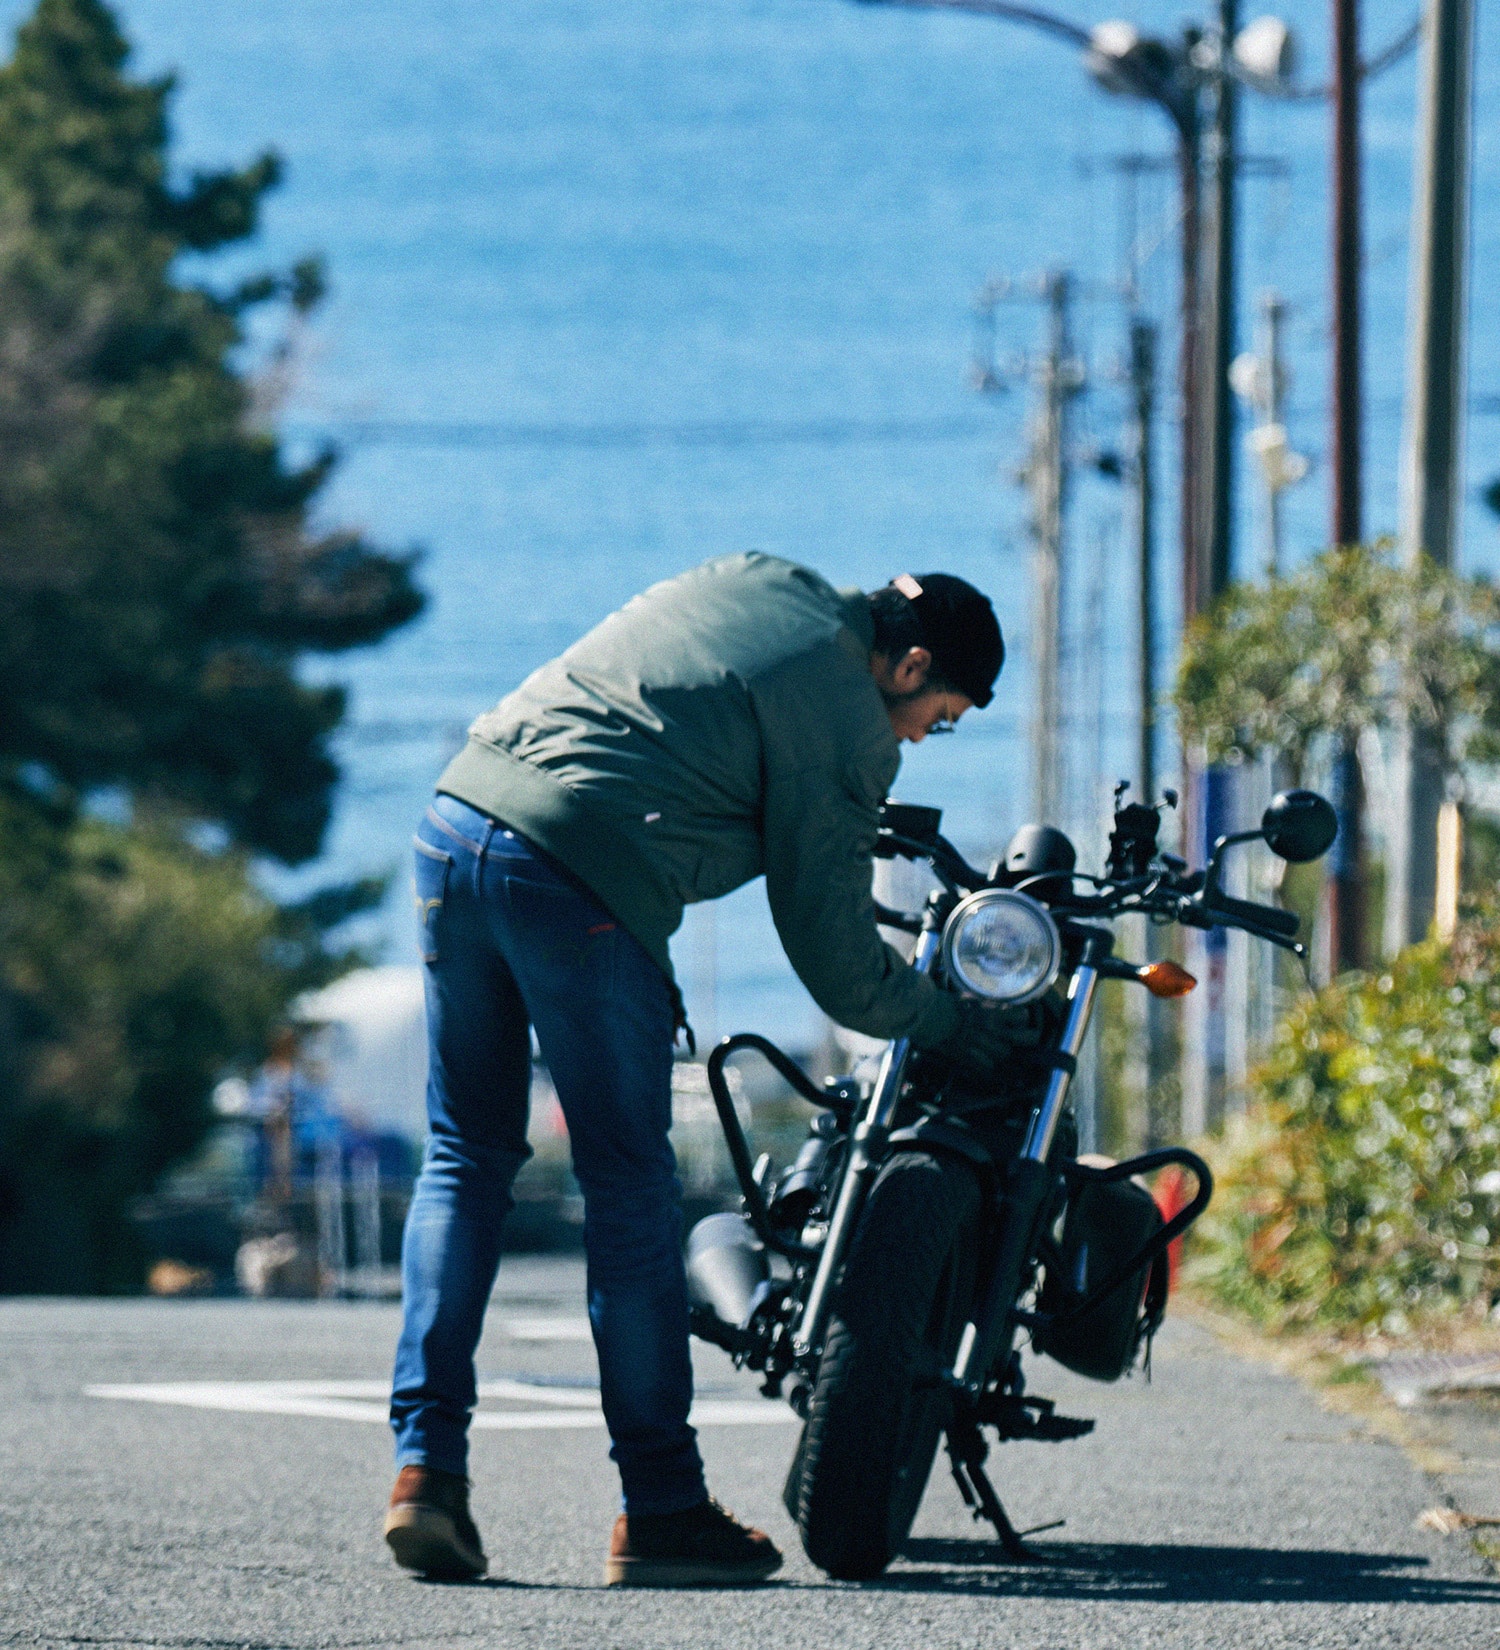 EDWIN(エドウイン)の【涼】バイク用 COOL レギュラーストレートデニムパンツ|パンツ/デニムパンツ/メンズ|中色ブルー